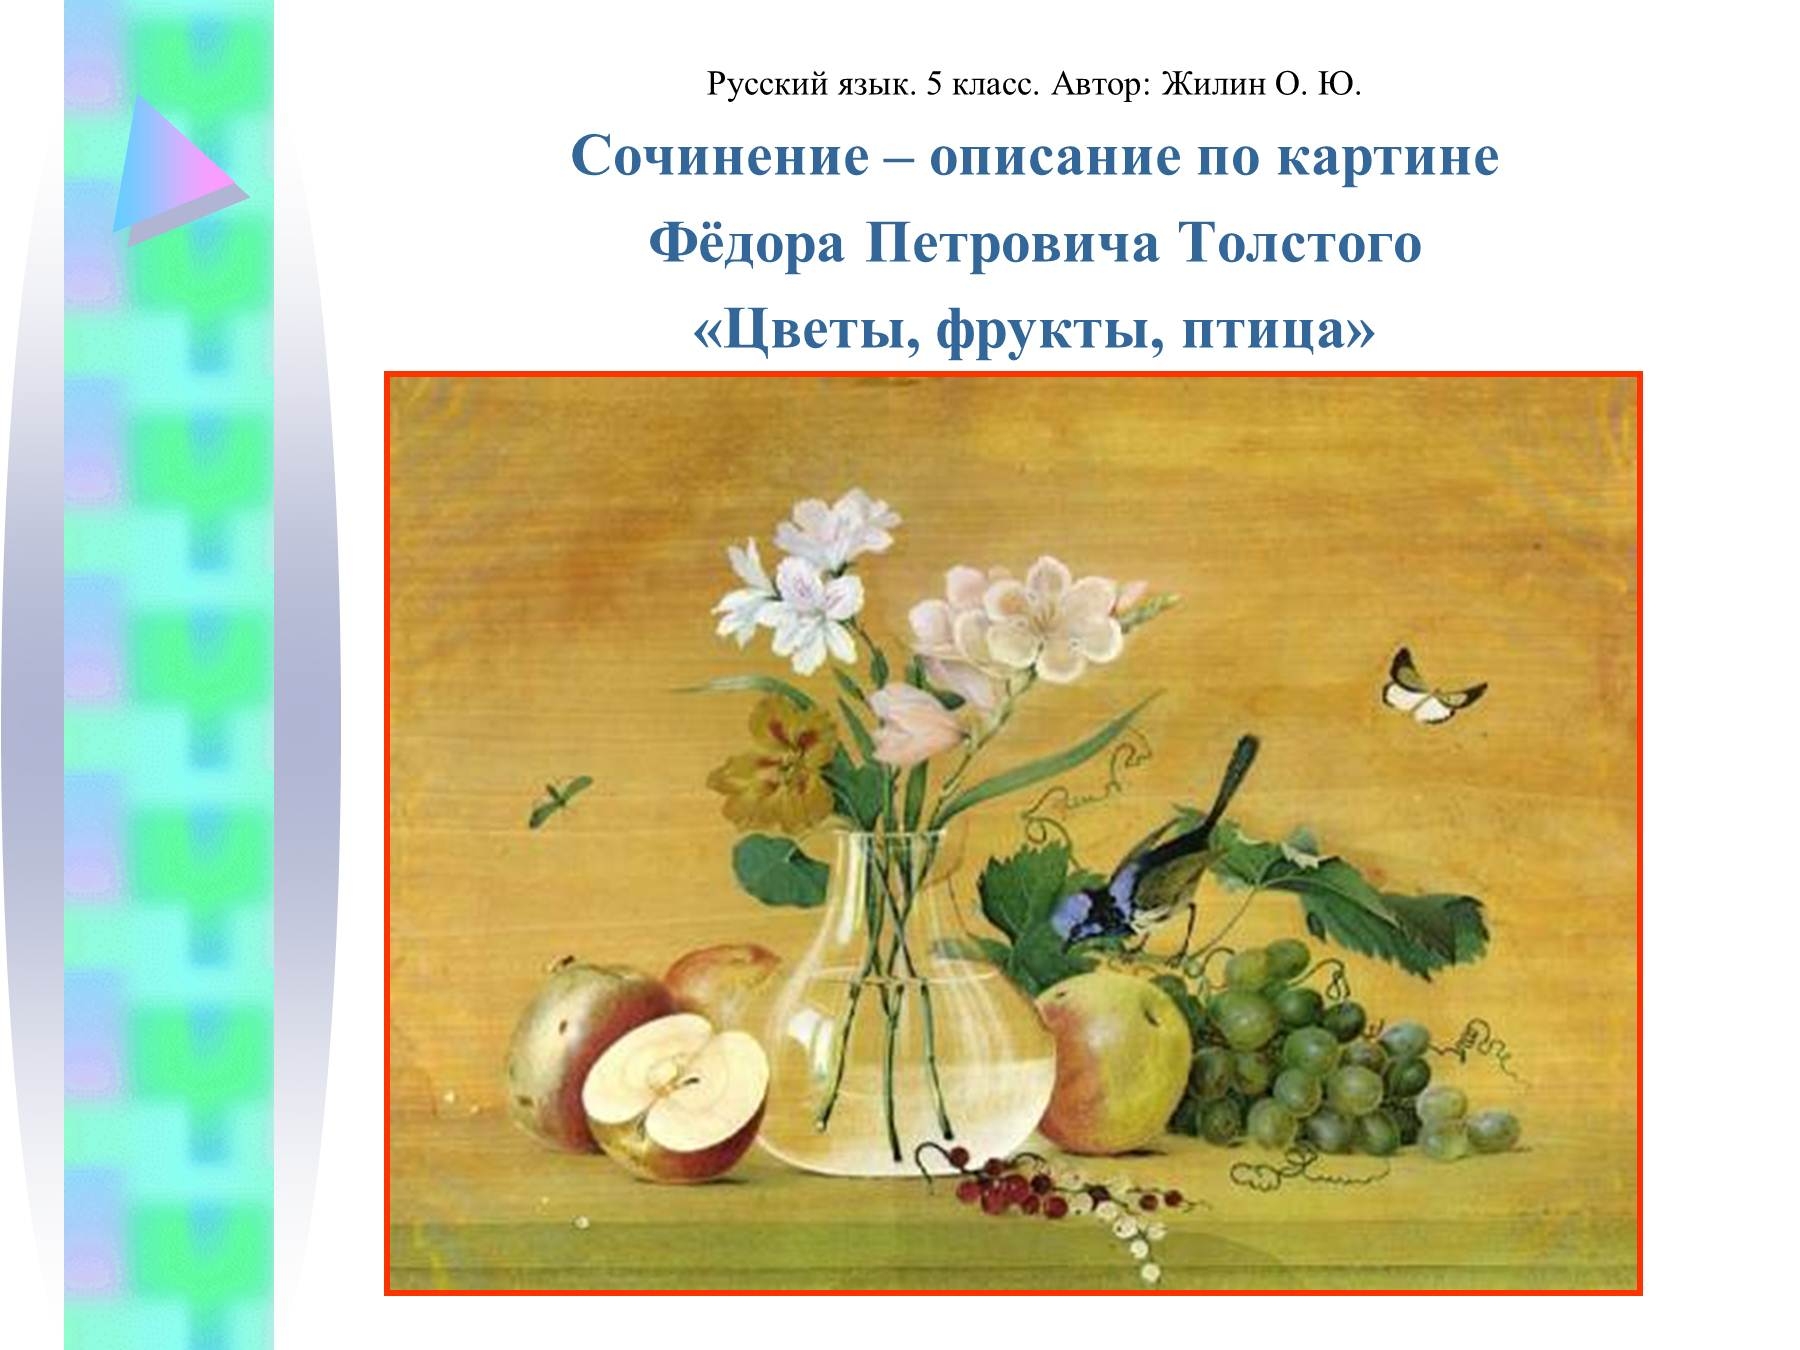 Сочинение описание картины конспект урока 6 класс. Ф.П. Толстого "цветы, фрукты и птица". Федора Петровича Толстого «цветы, фрукты, птица».